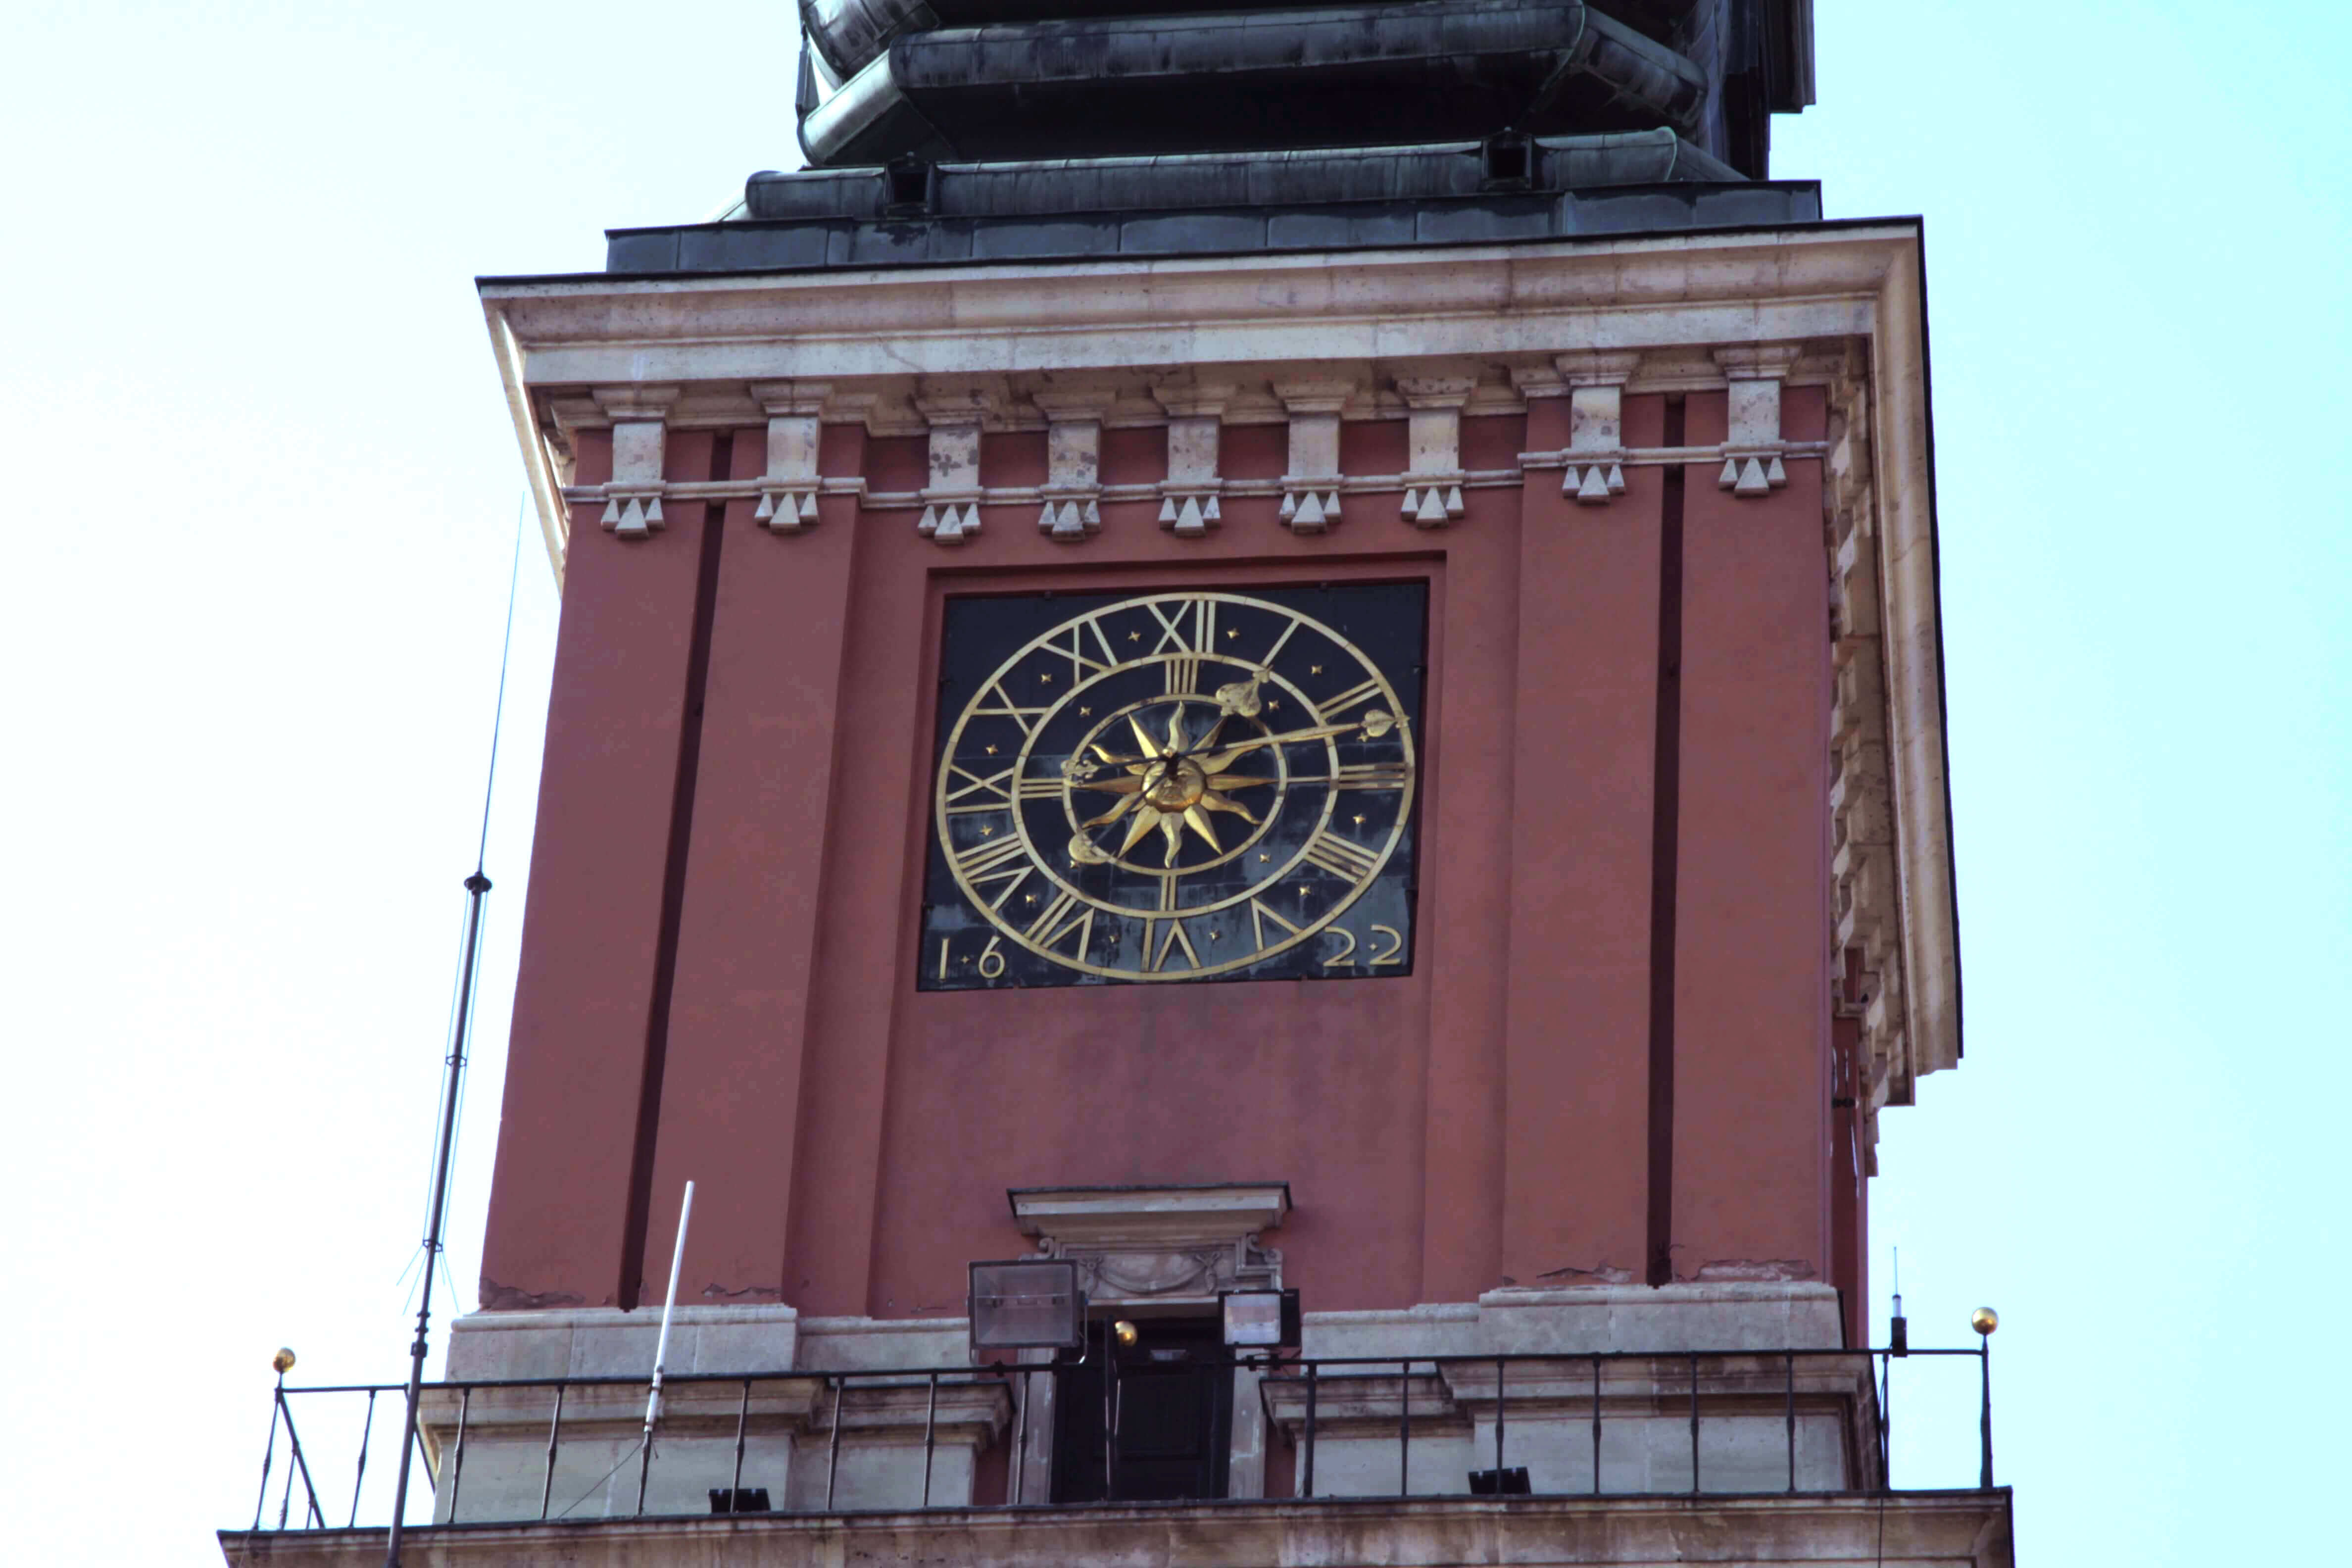 Wieża Zygmuntowska - Wieża Zegarowa Zamku Królewskiego w Warszawie